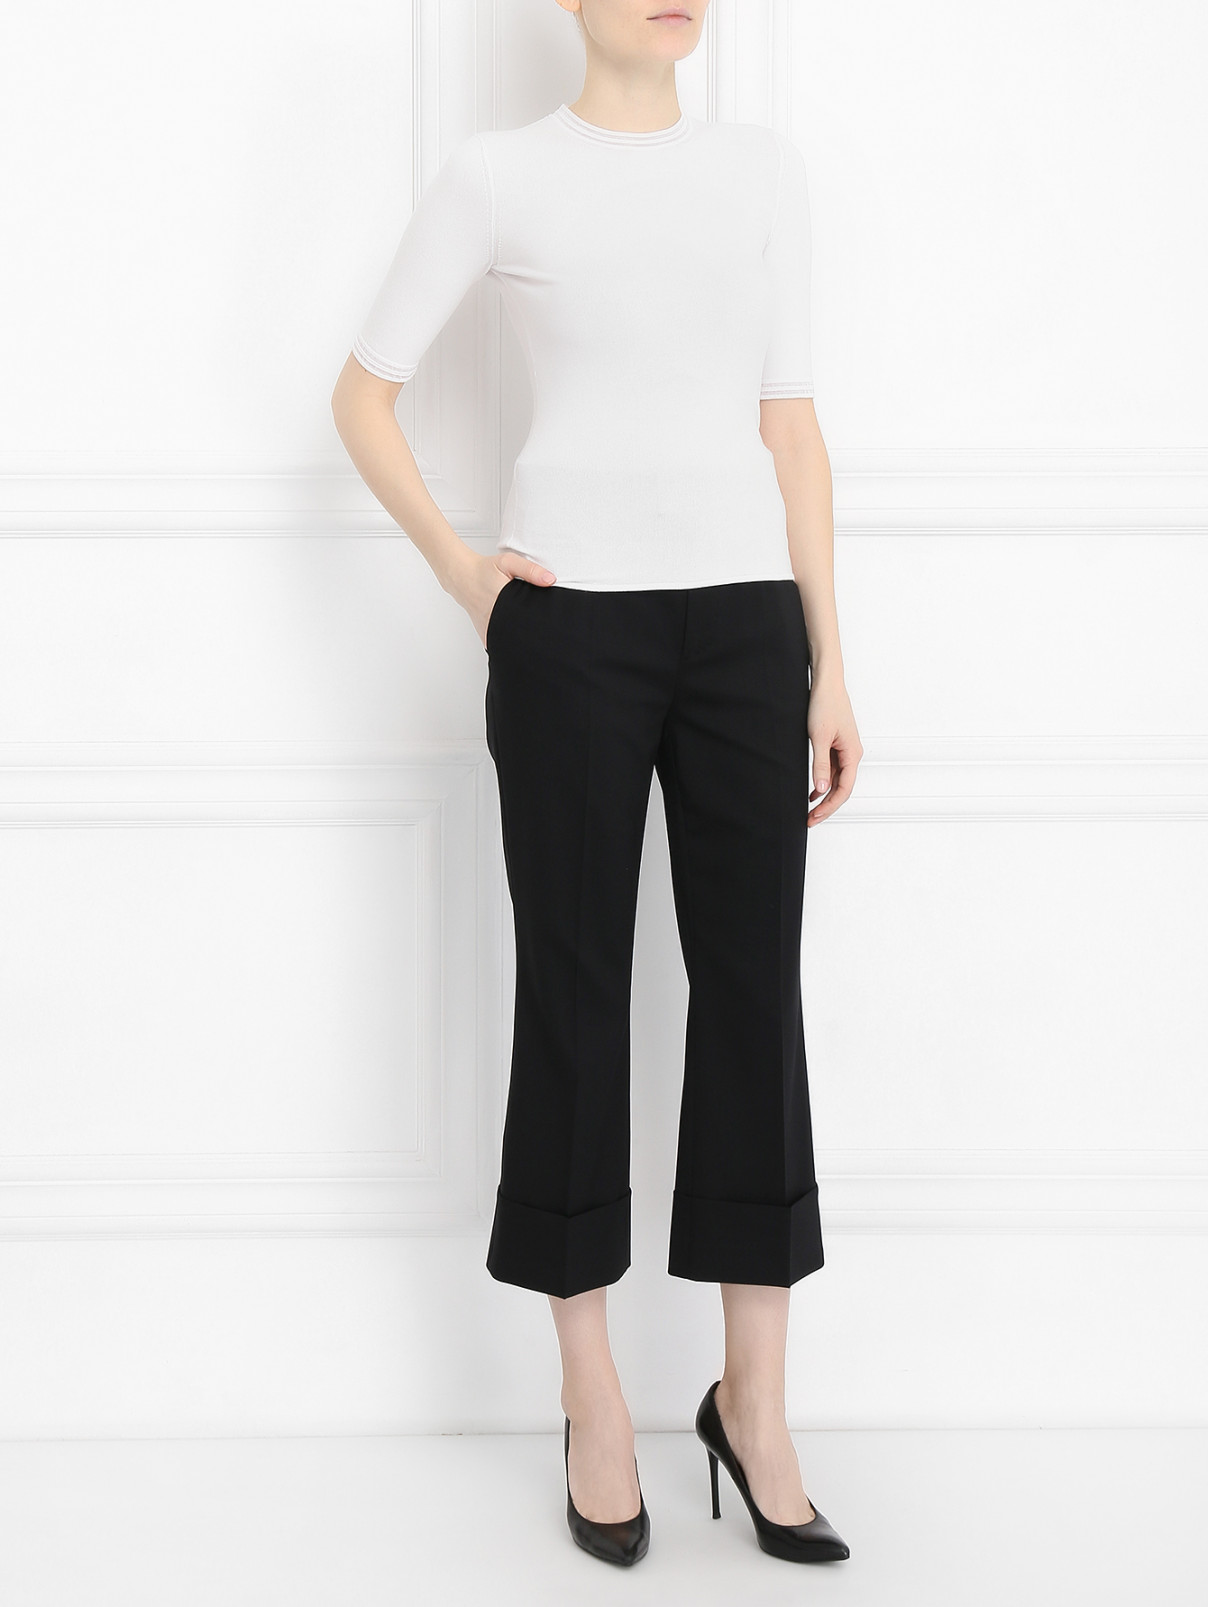 Укороченные брюки из шерсти Dsquared2  –  Модель Общий вид  – Цвет:  Черный